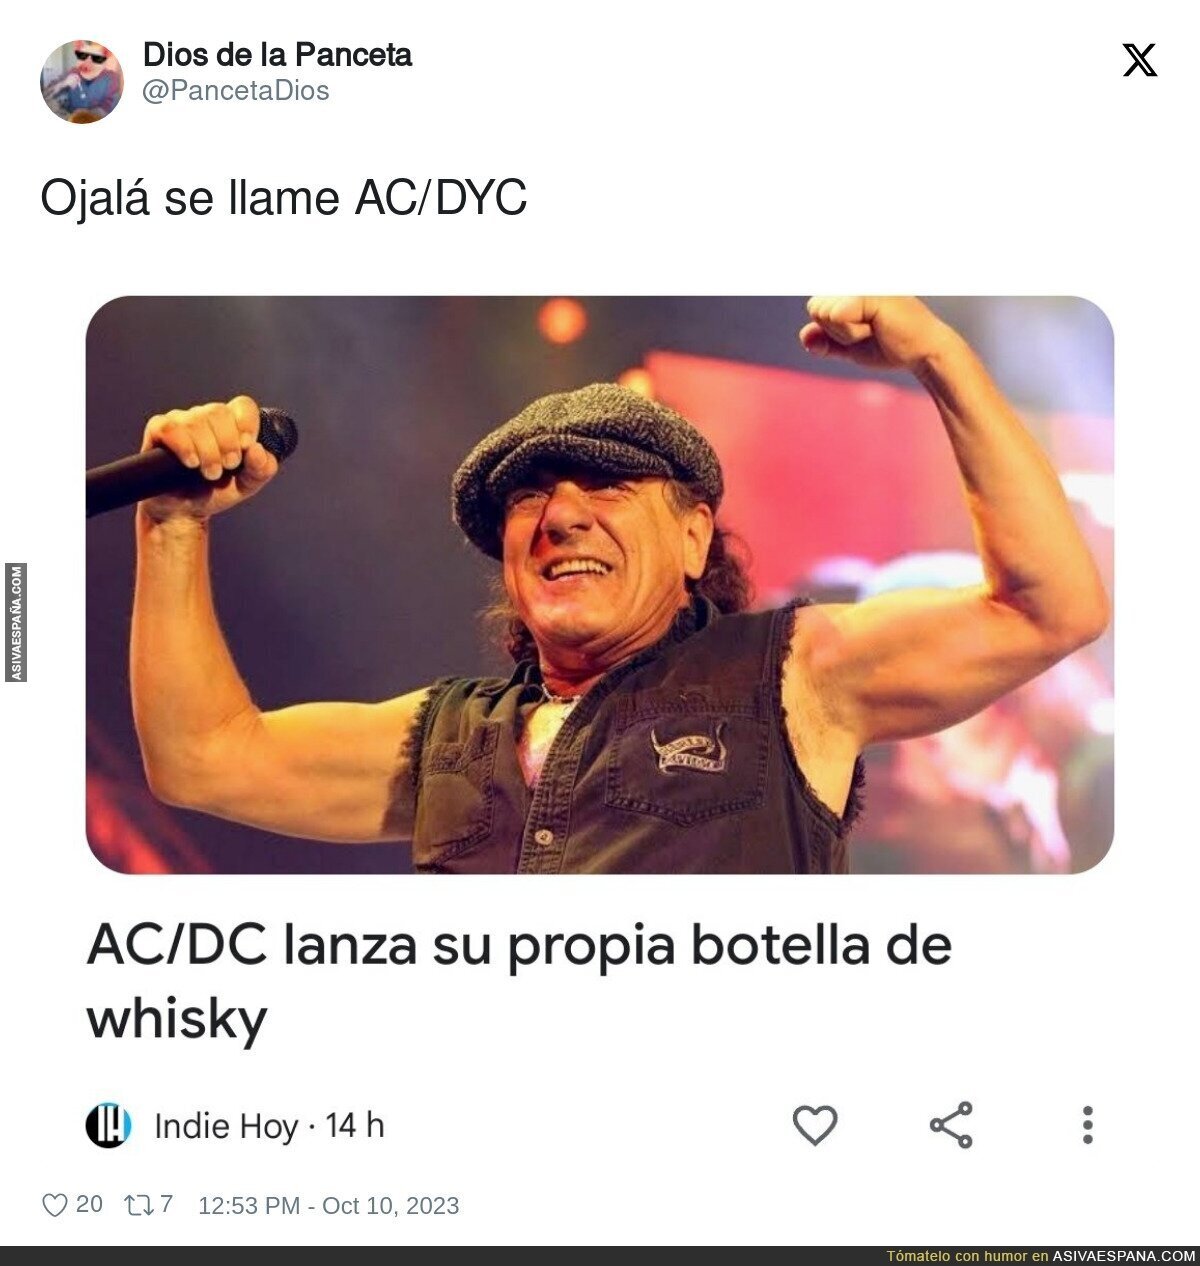 AC/DC triunfaría como la Coca Cola